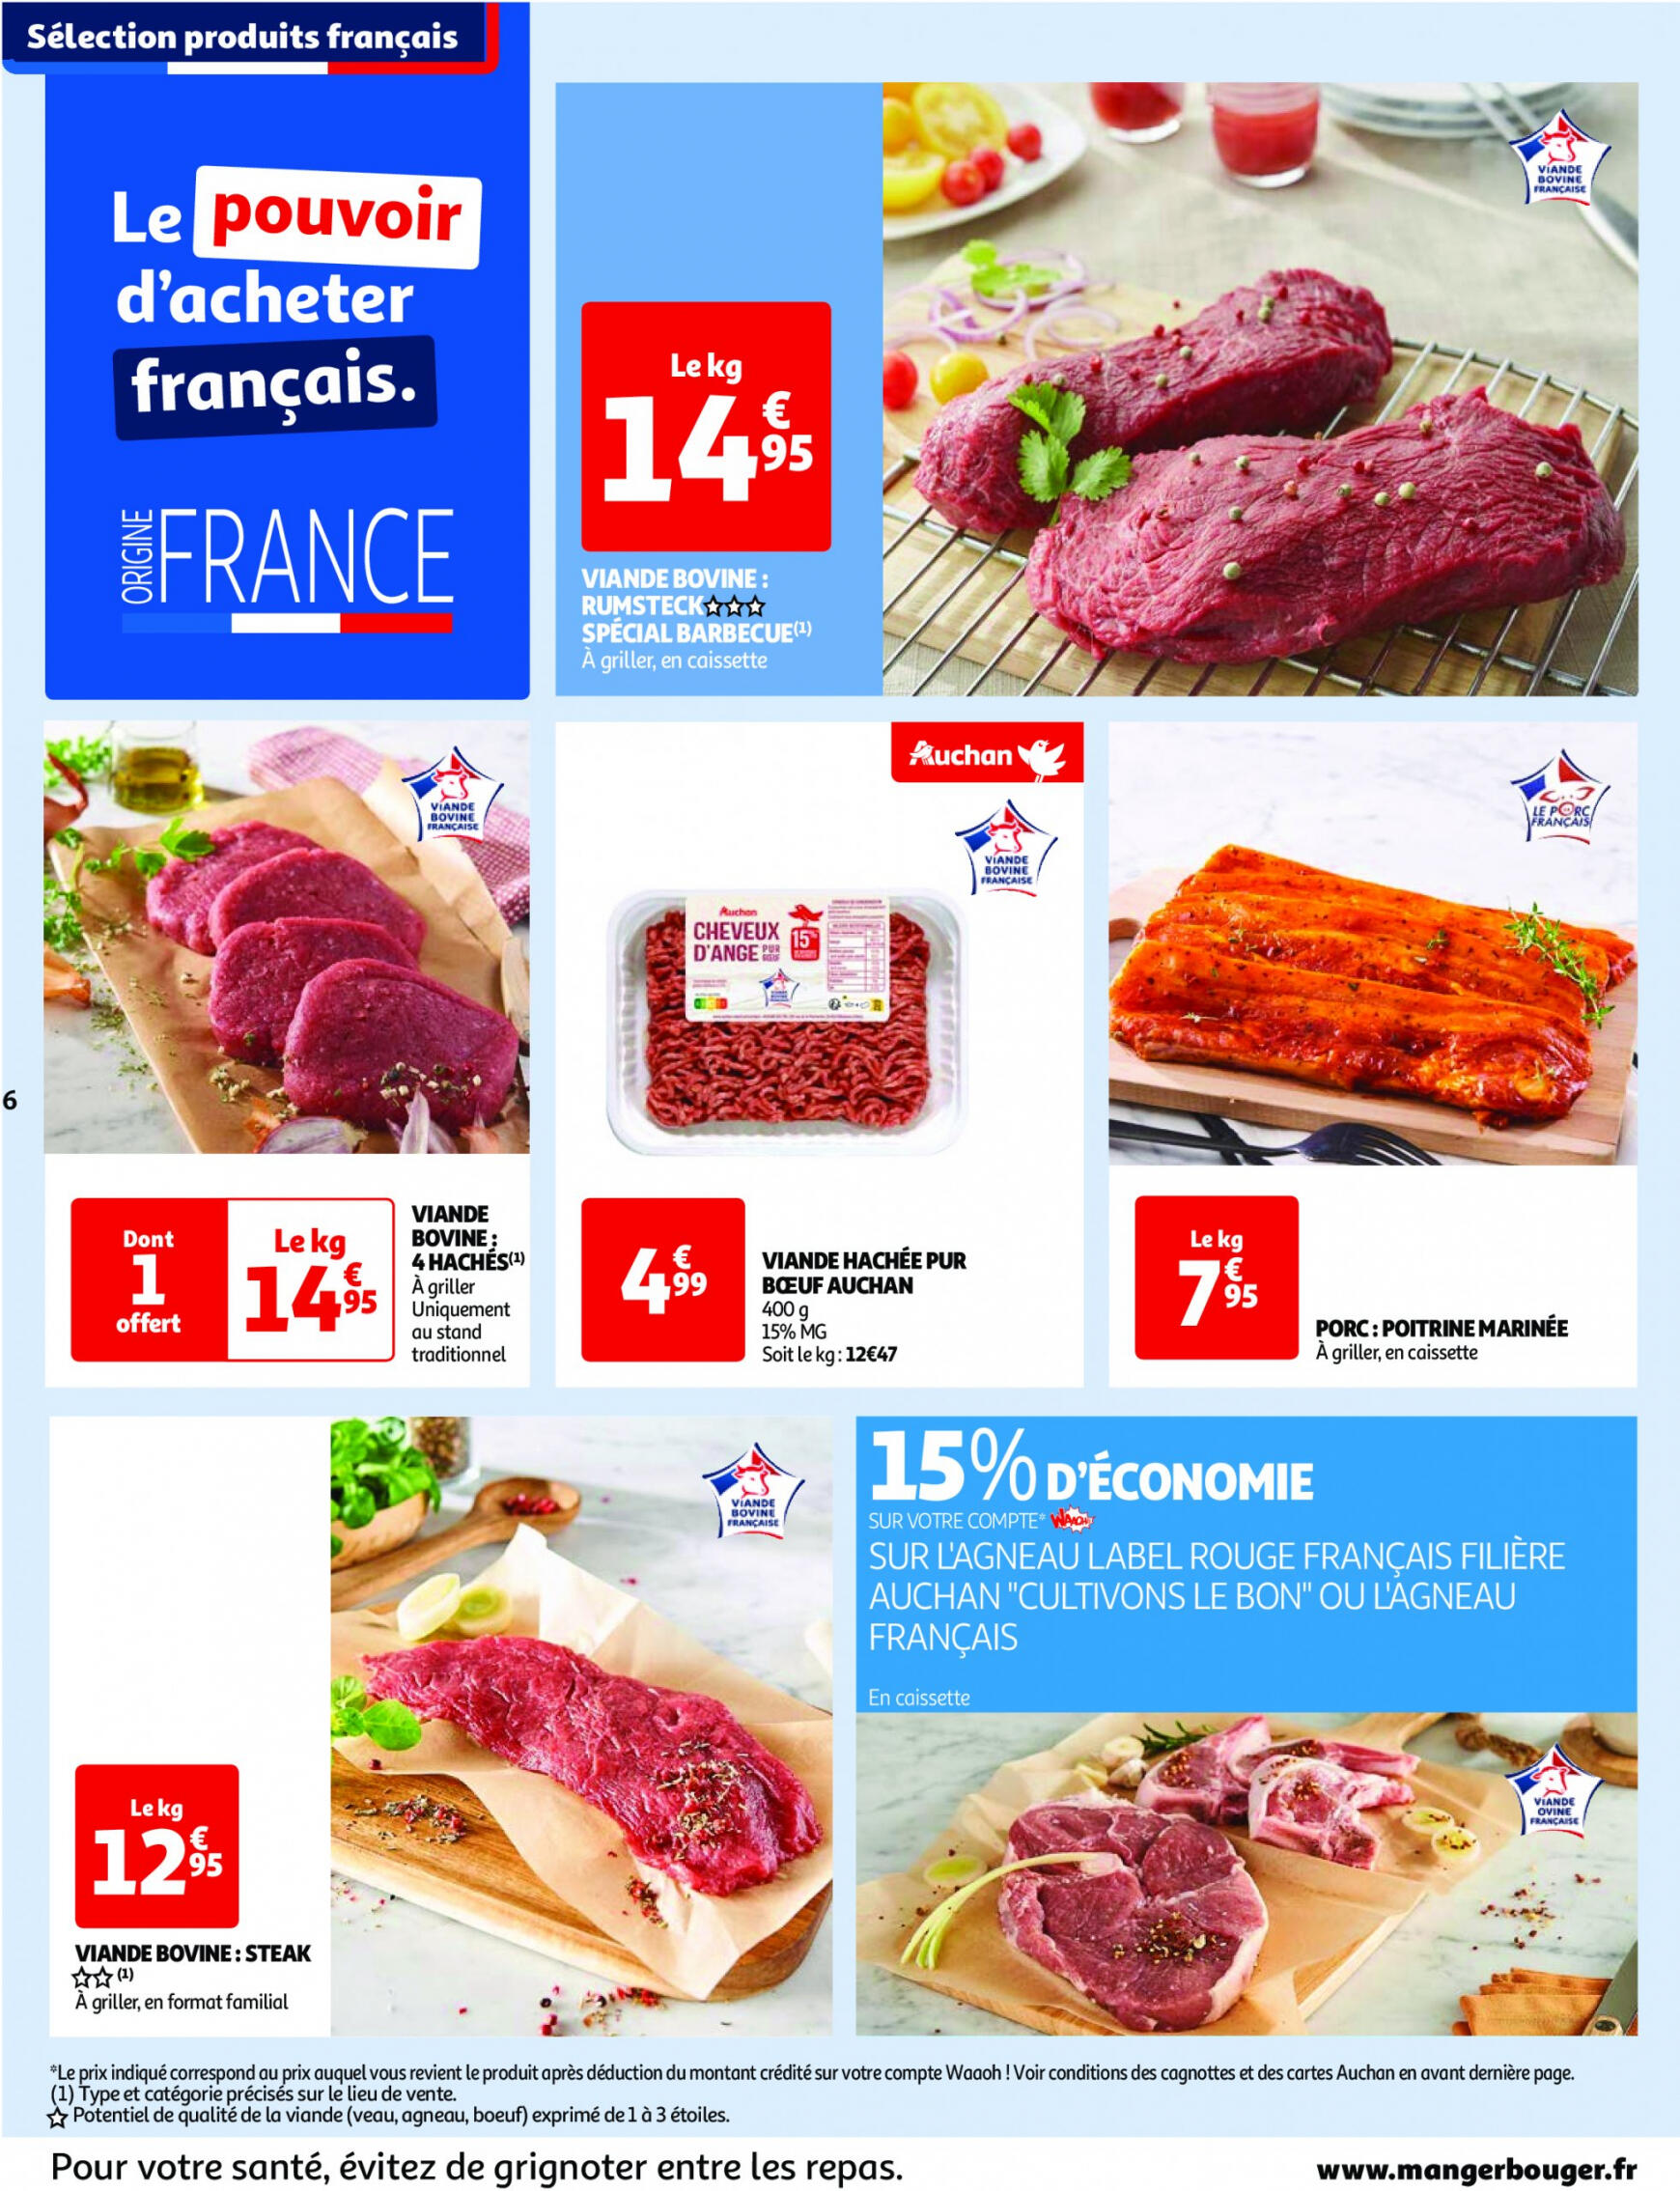 auchan - Prospectus Auchan actuel 14.05. - 21.05. - page: 6